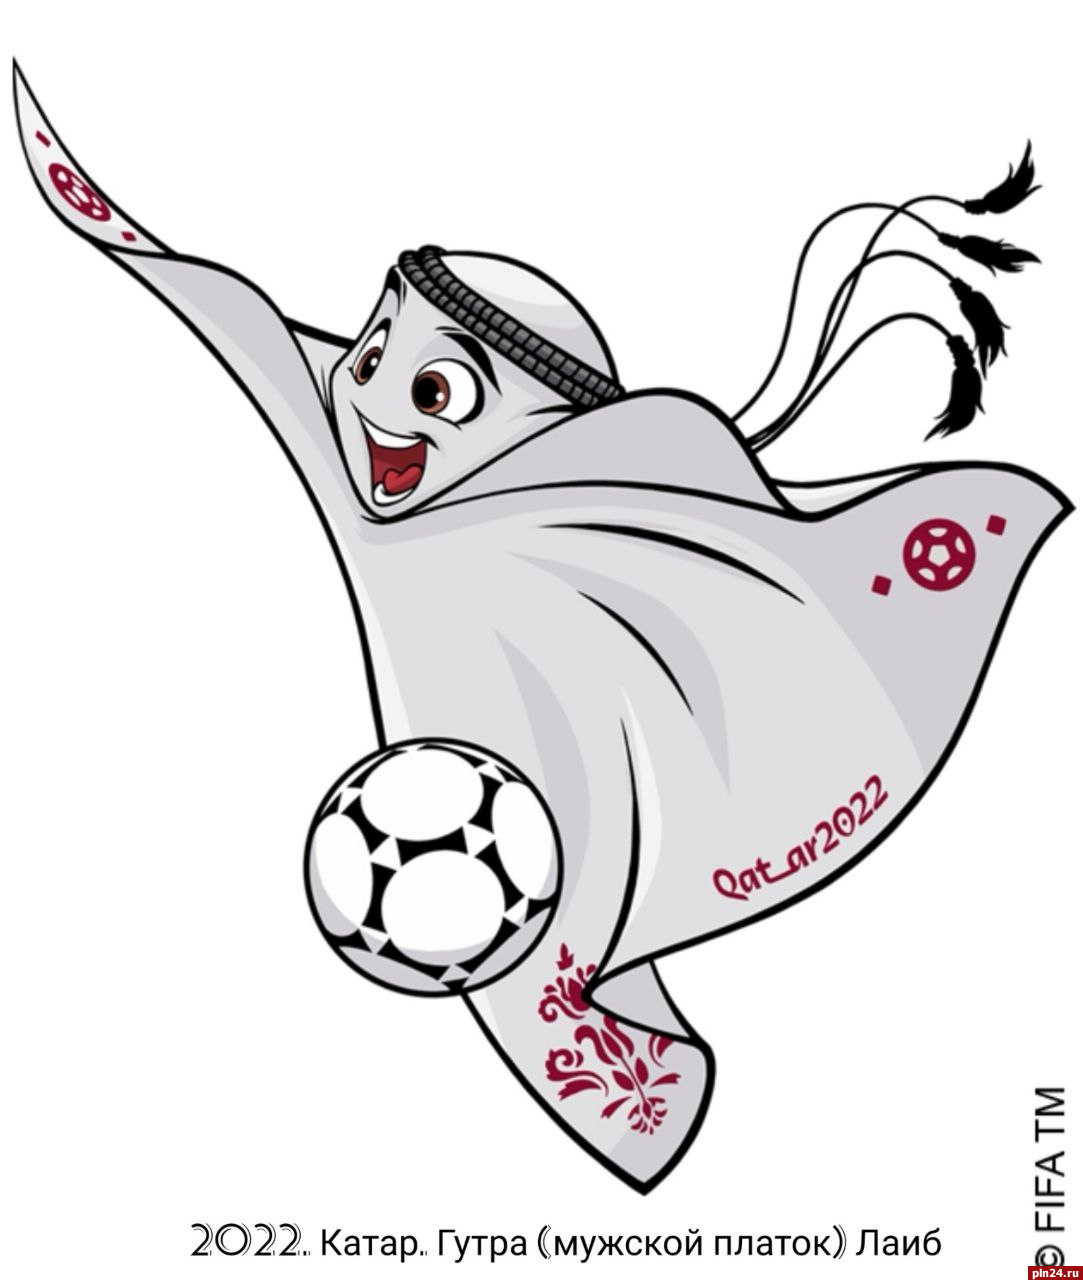 Талисманом чемпионата мира по футболу в Катаре стала гутра по имени Лаиб